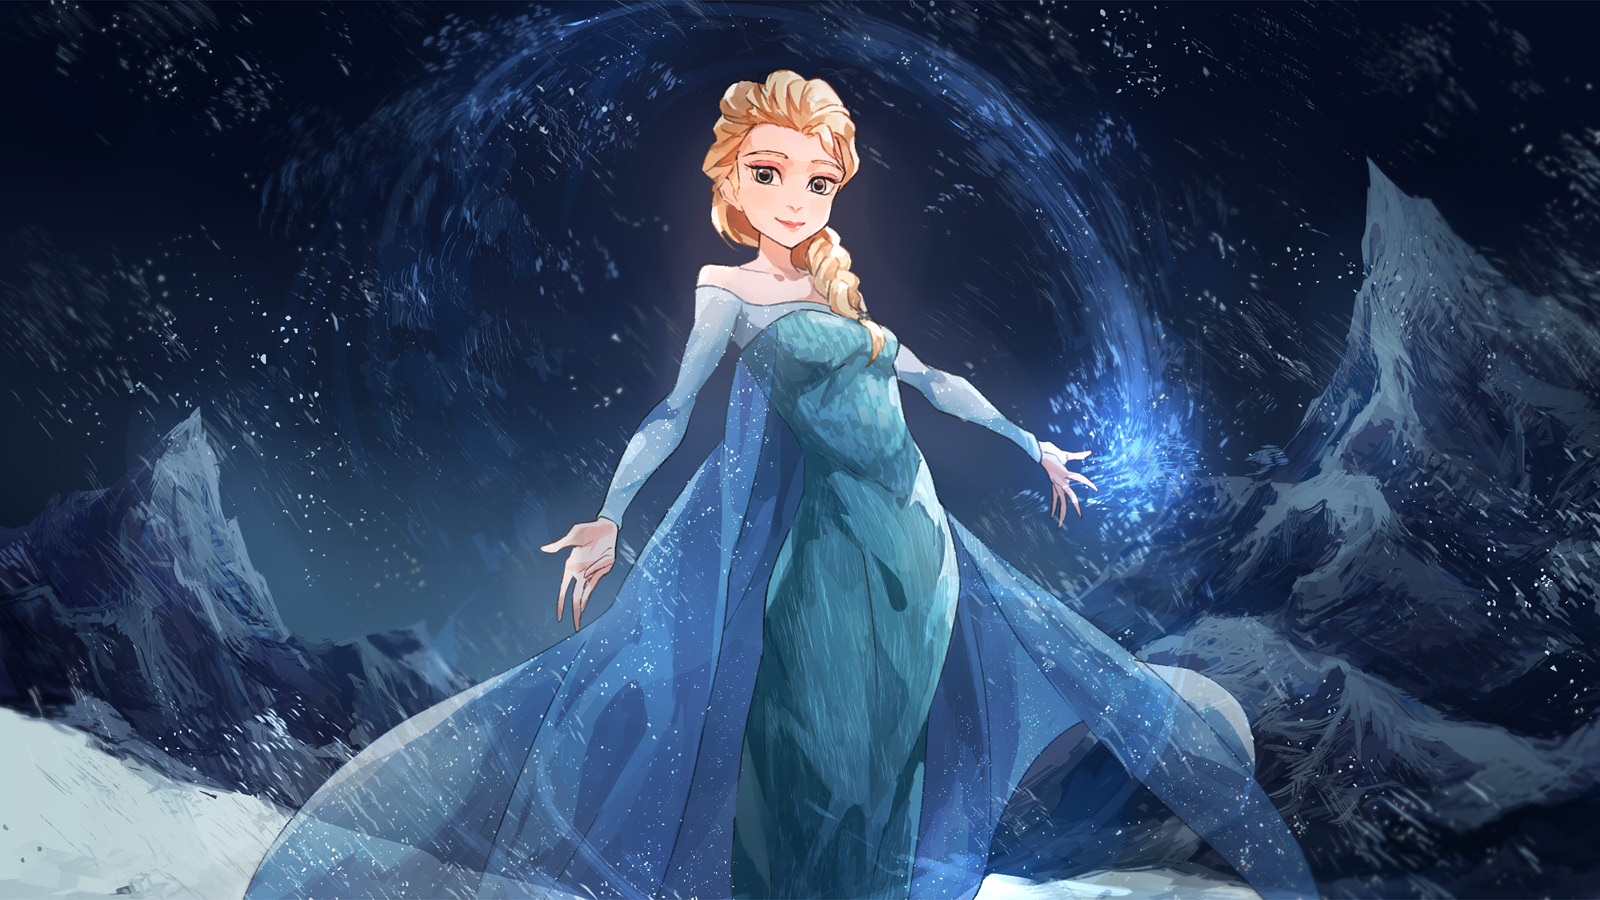 Bạn đang tìm kiếm một hình nền đẹp và lung linh cho máy tính của mình? Hãy thử đặt hình nền Nữ hoàng băng giá đẹp, một bộ sưu tập những hình ảnh tuyệt đẹp về cô nàng Elsa và bạn bè trong trò chơi kỳ diệu.